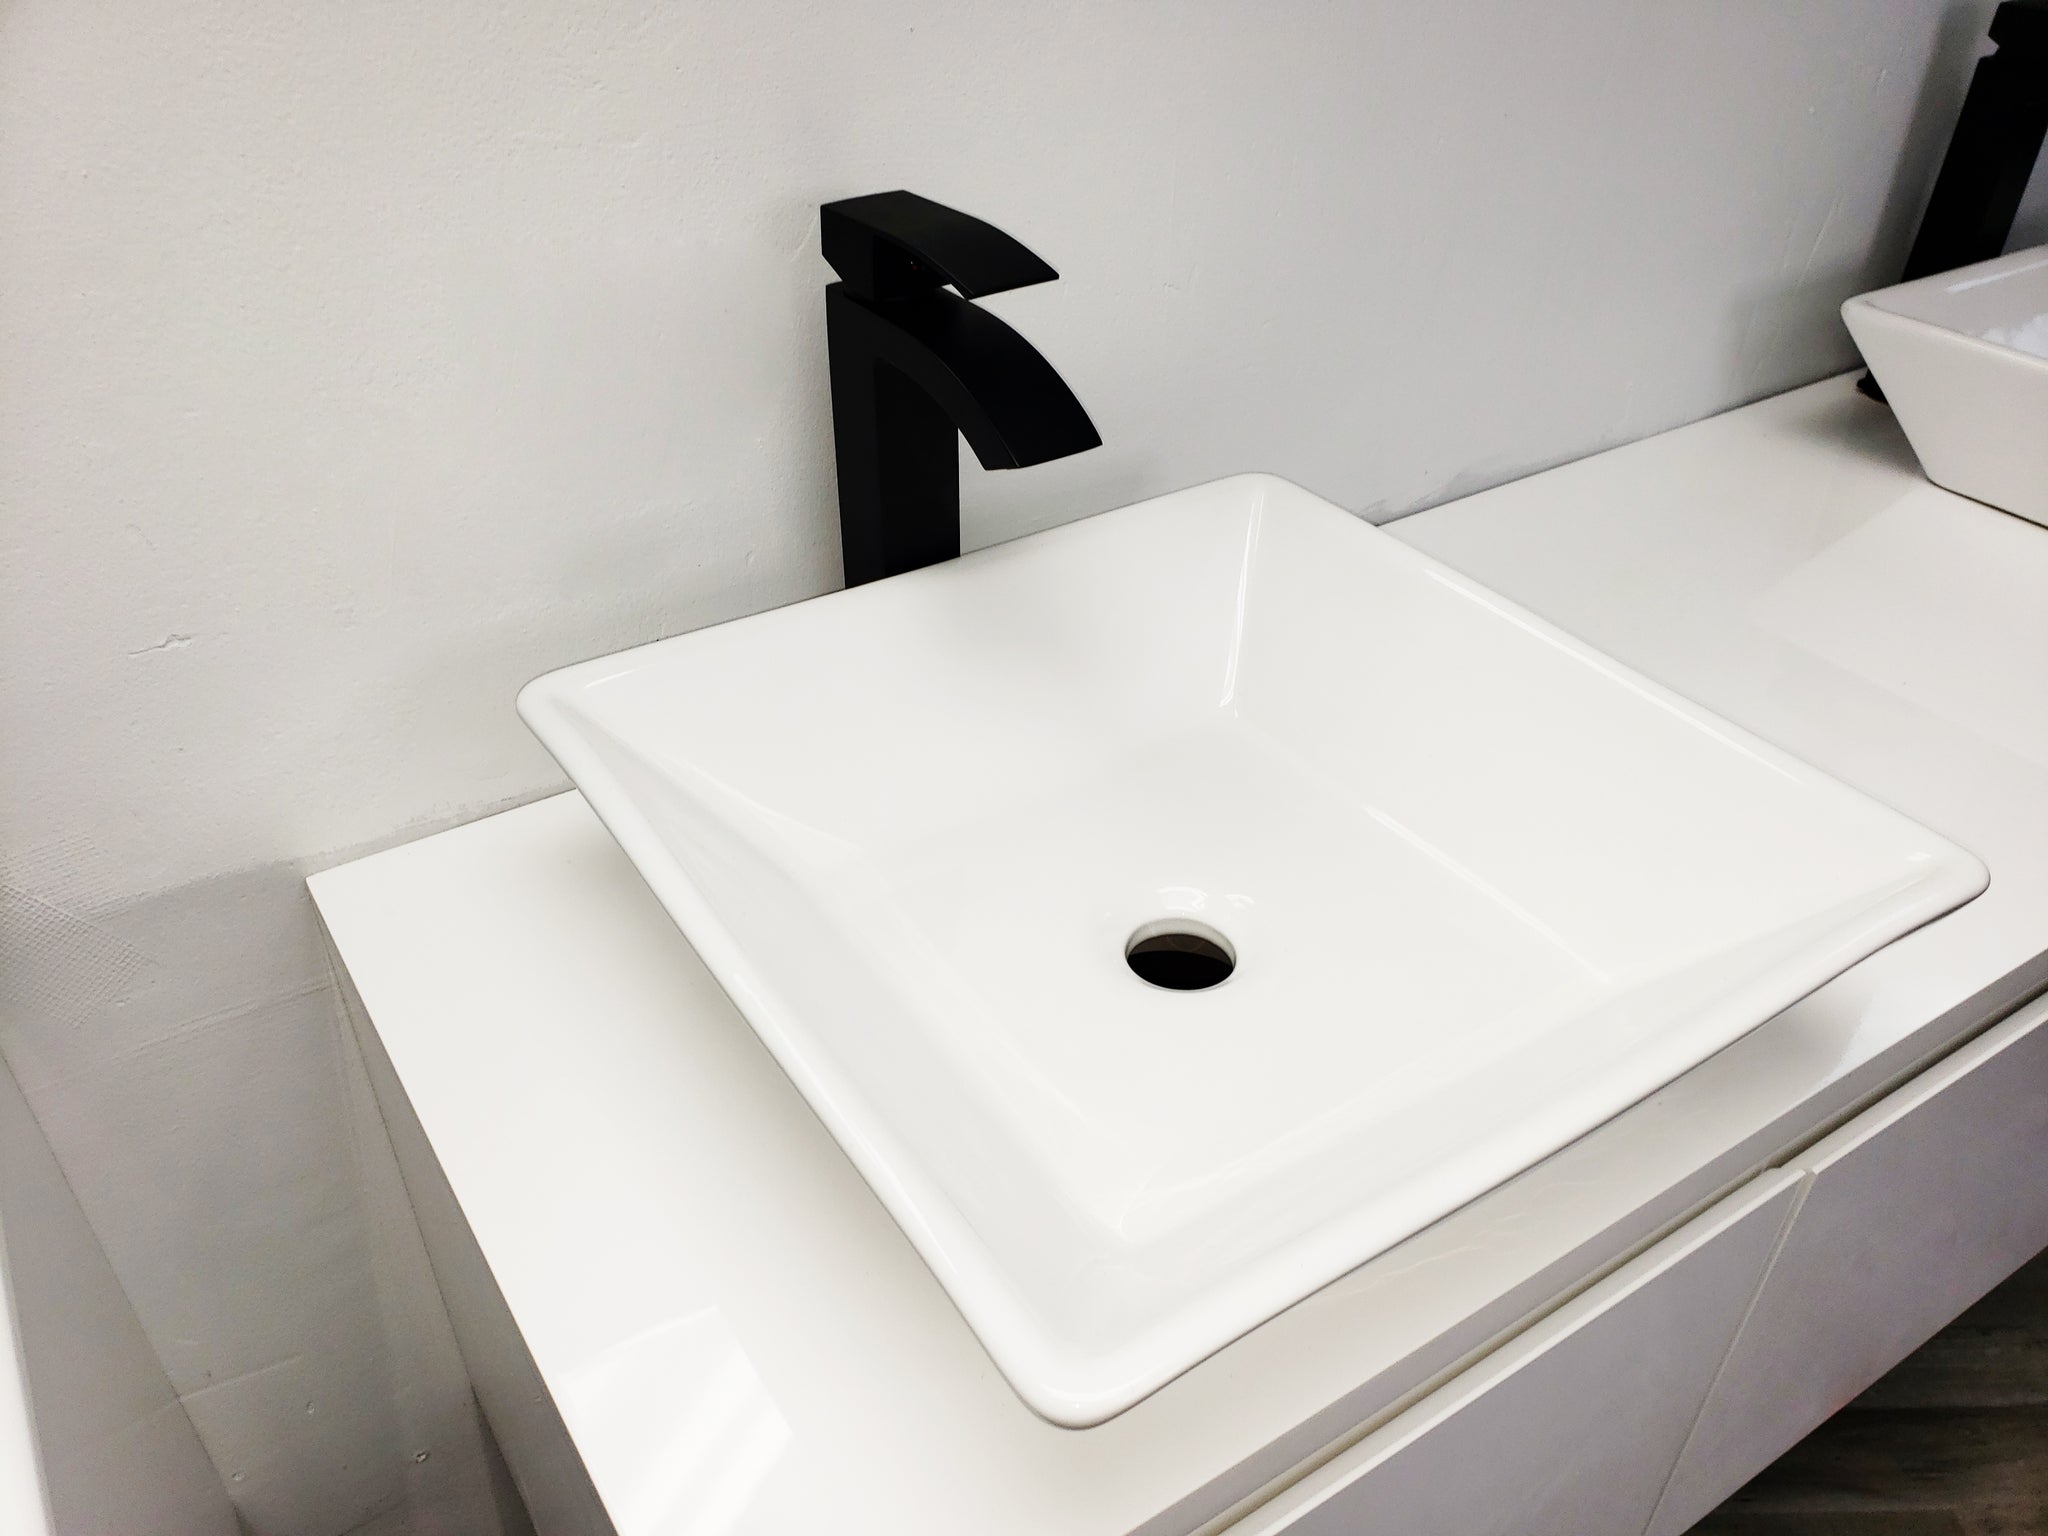 Mueble auxiliar de baño alto y estrecho Venca Hogar - Venca - 059219